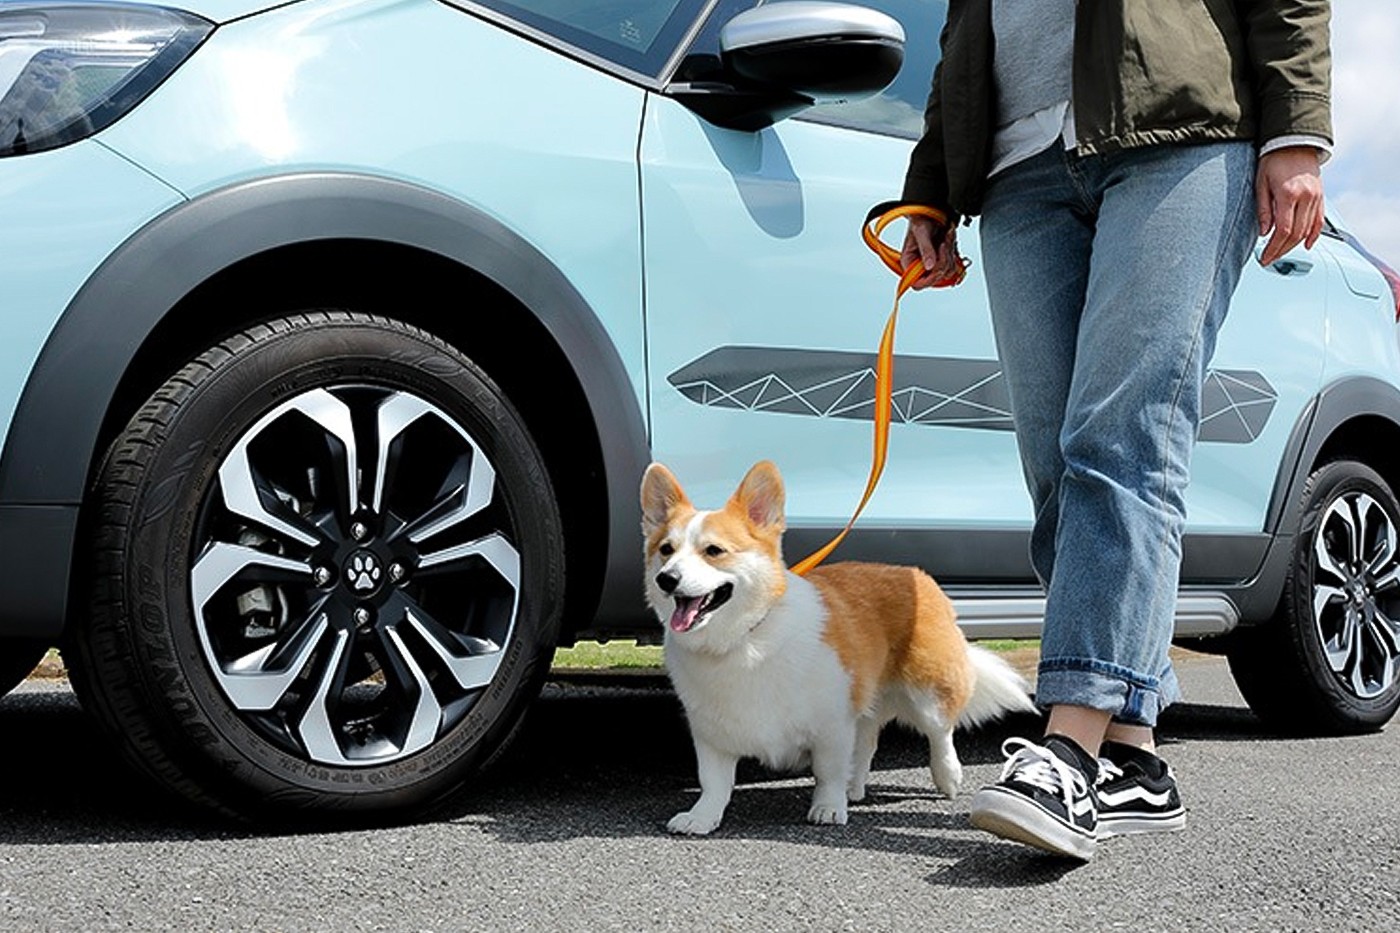 Honda Rilis Aksesoris Bagi Pecinta Anjing Bernama "Honda Dog"